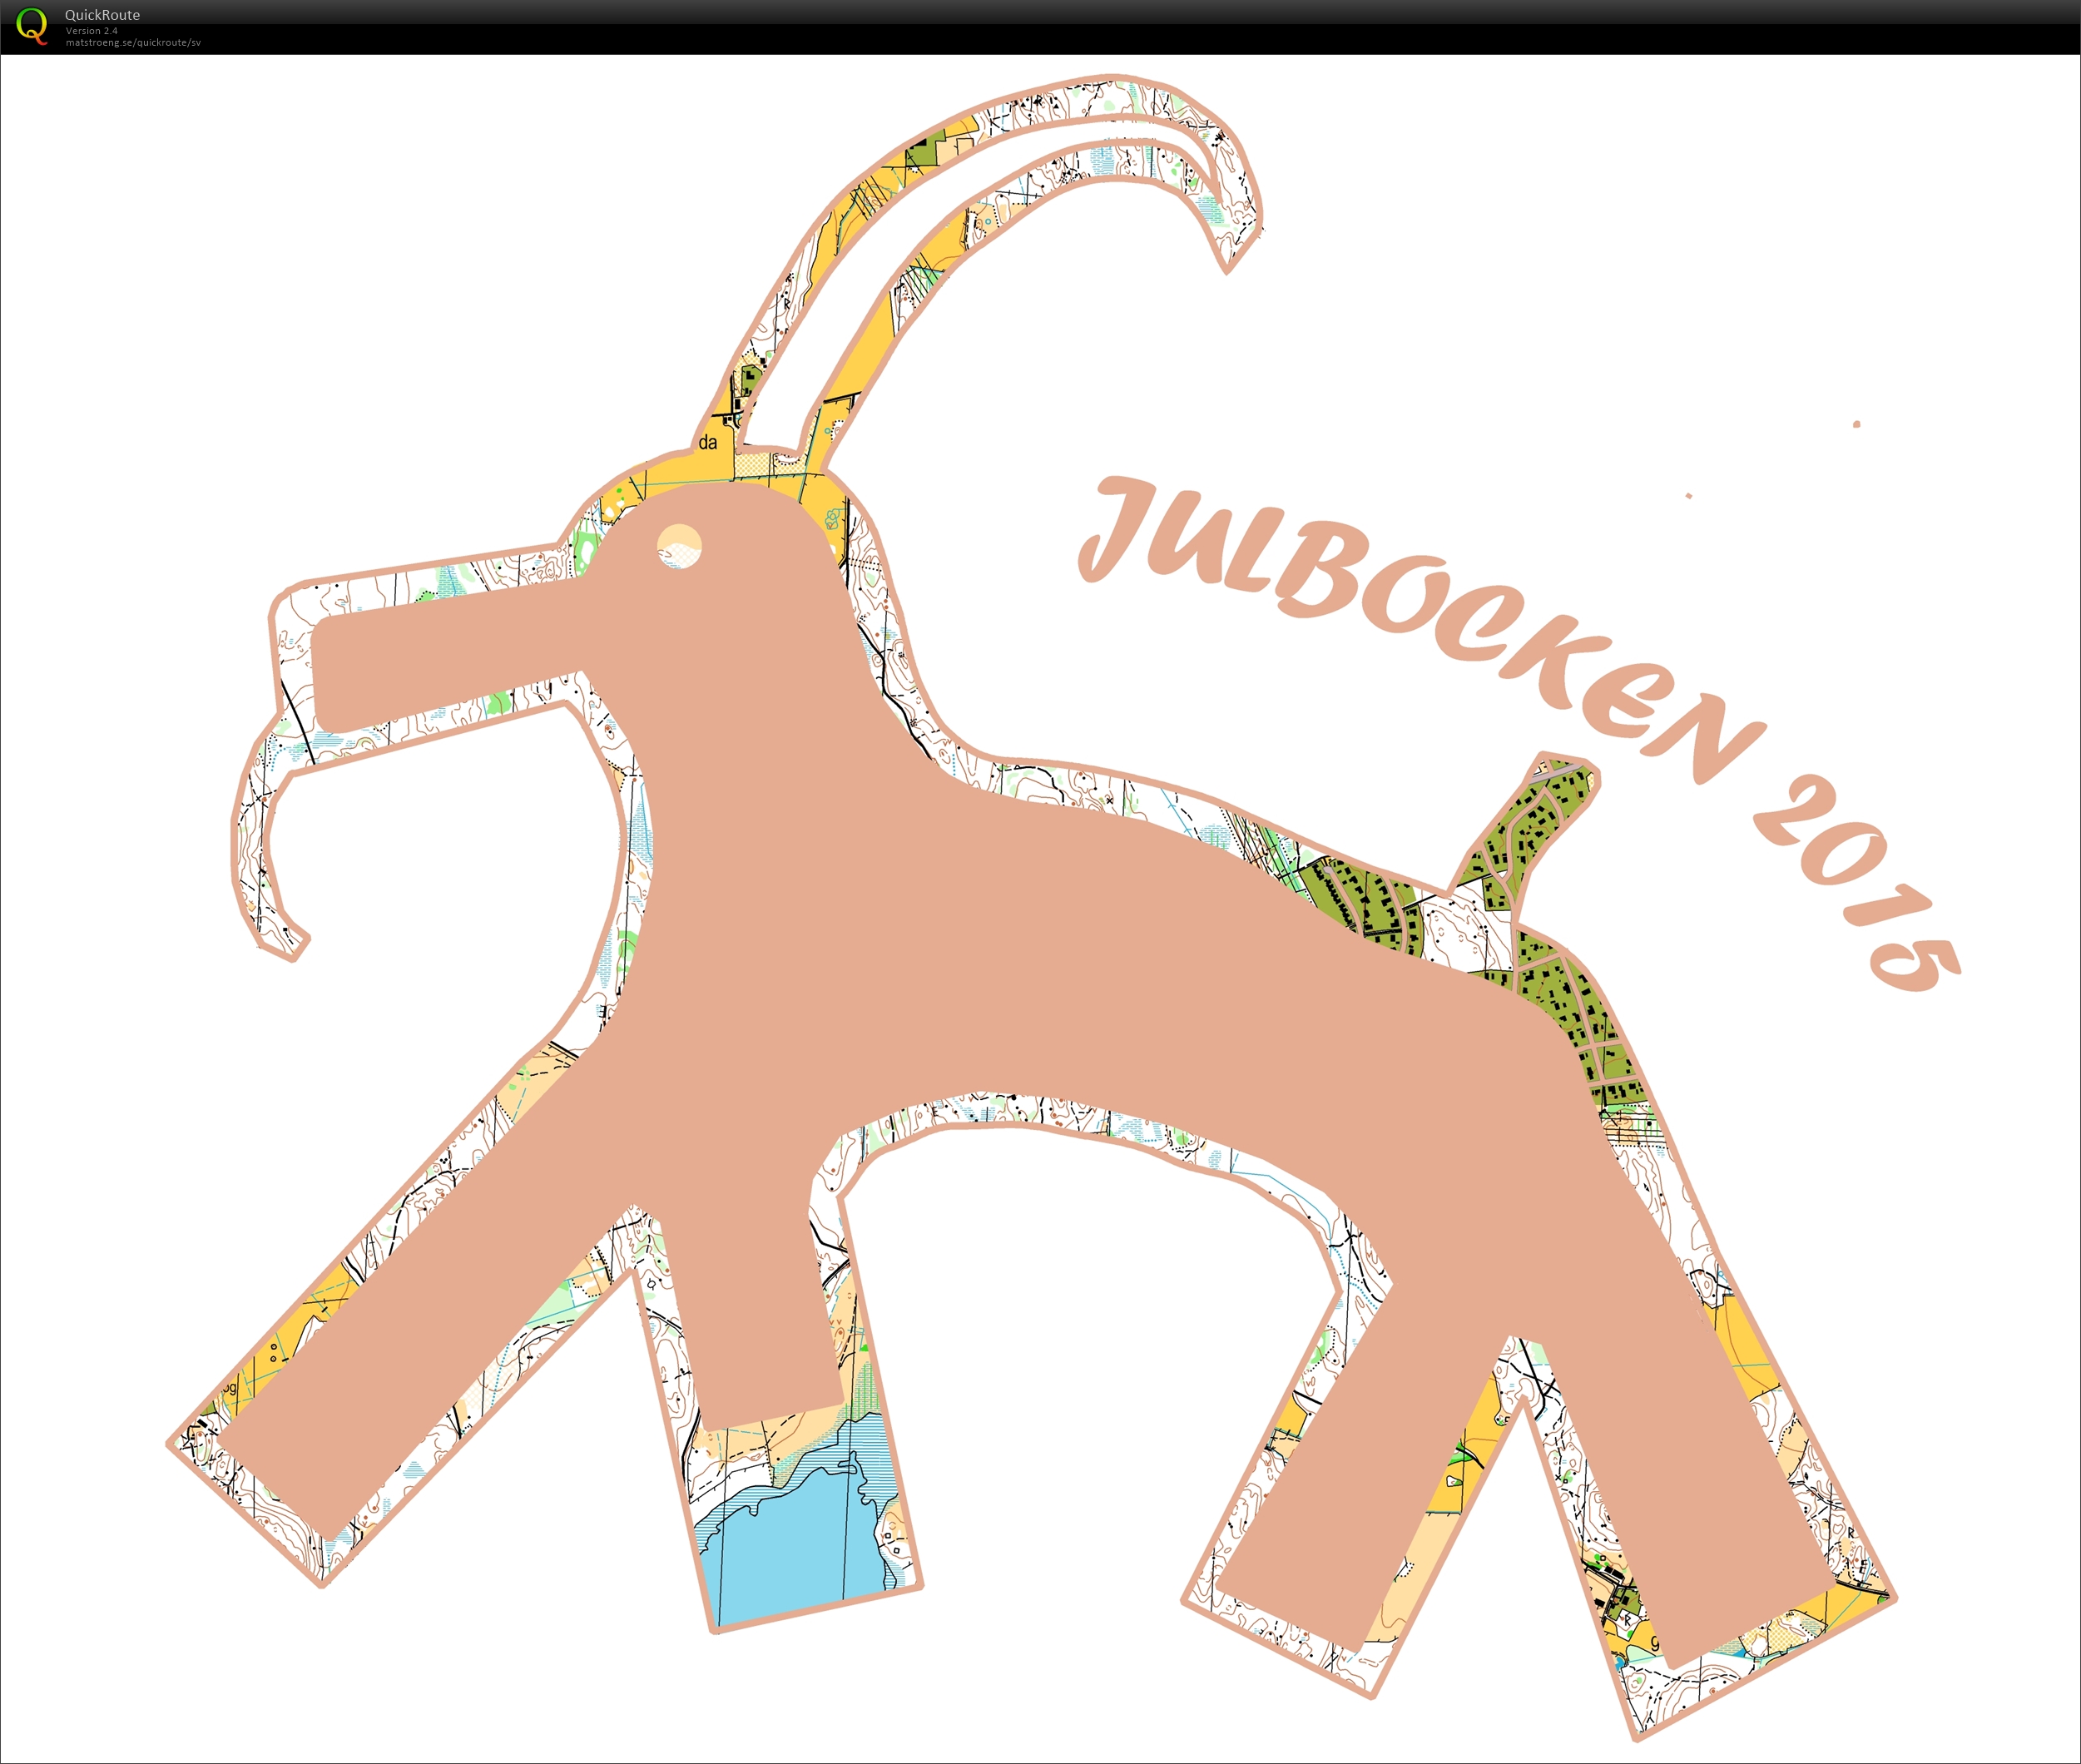 Pasta20:s Julkul - Julbocken (2015-12-26)